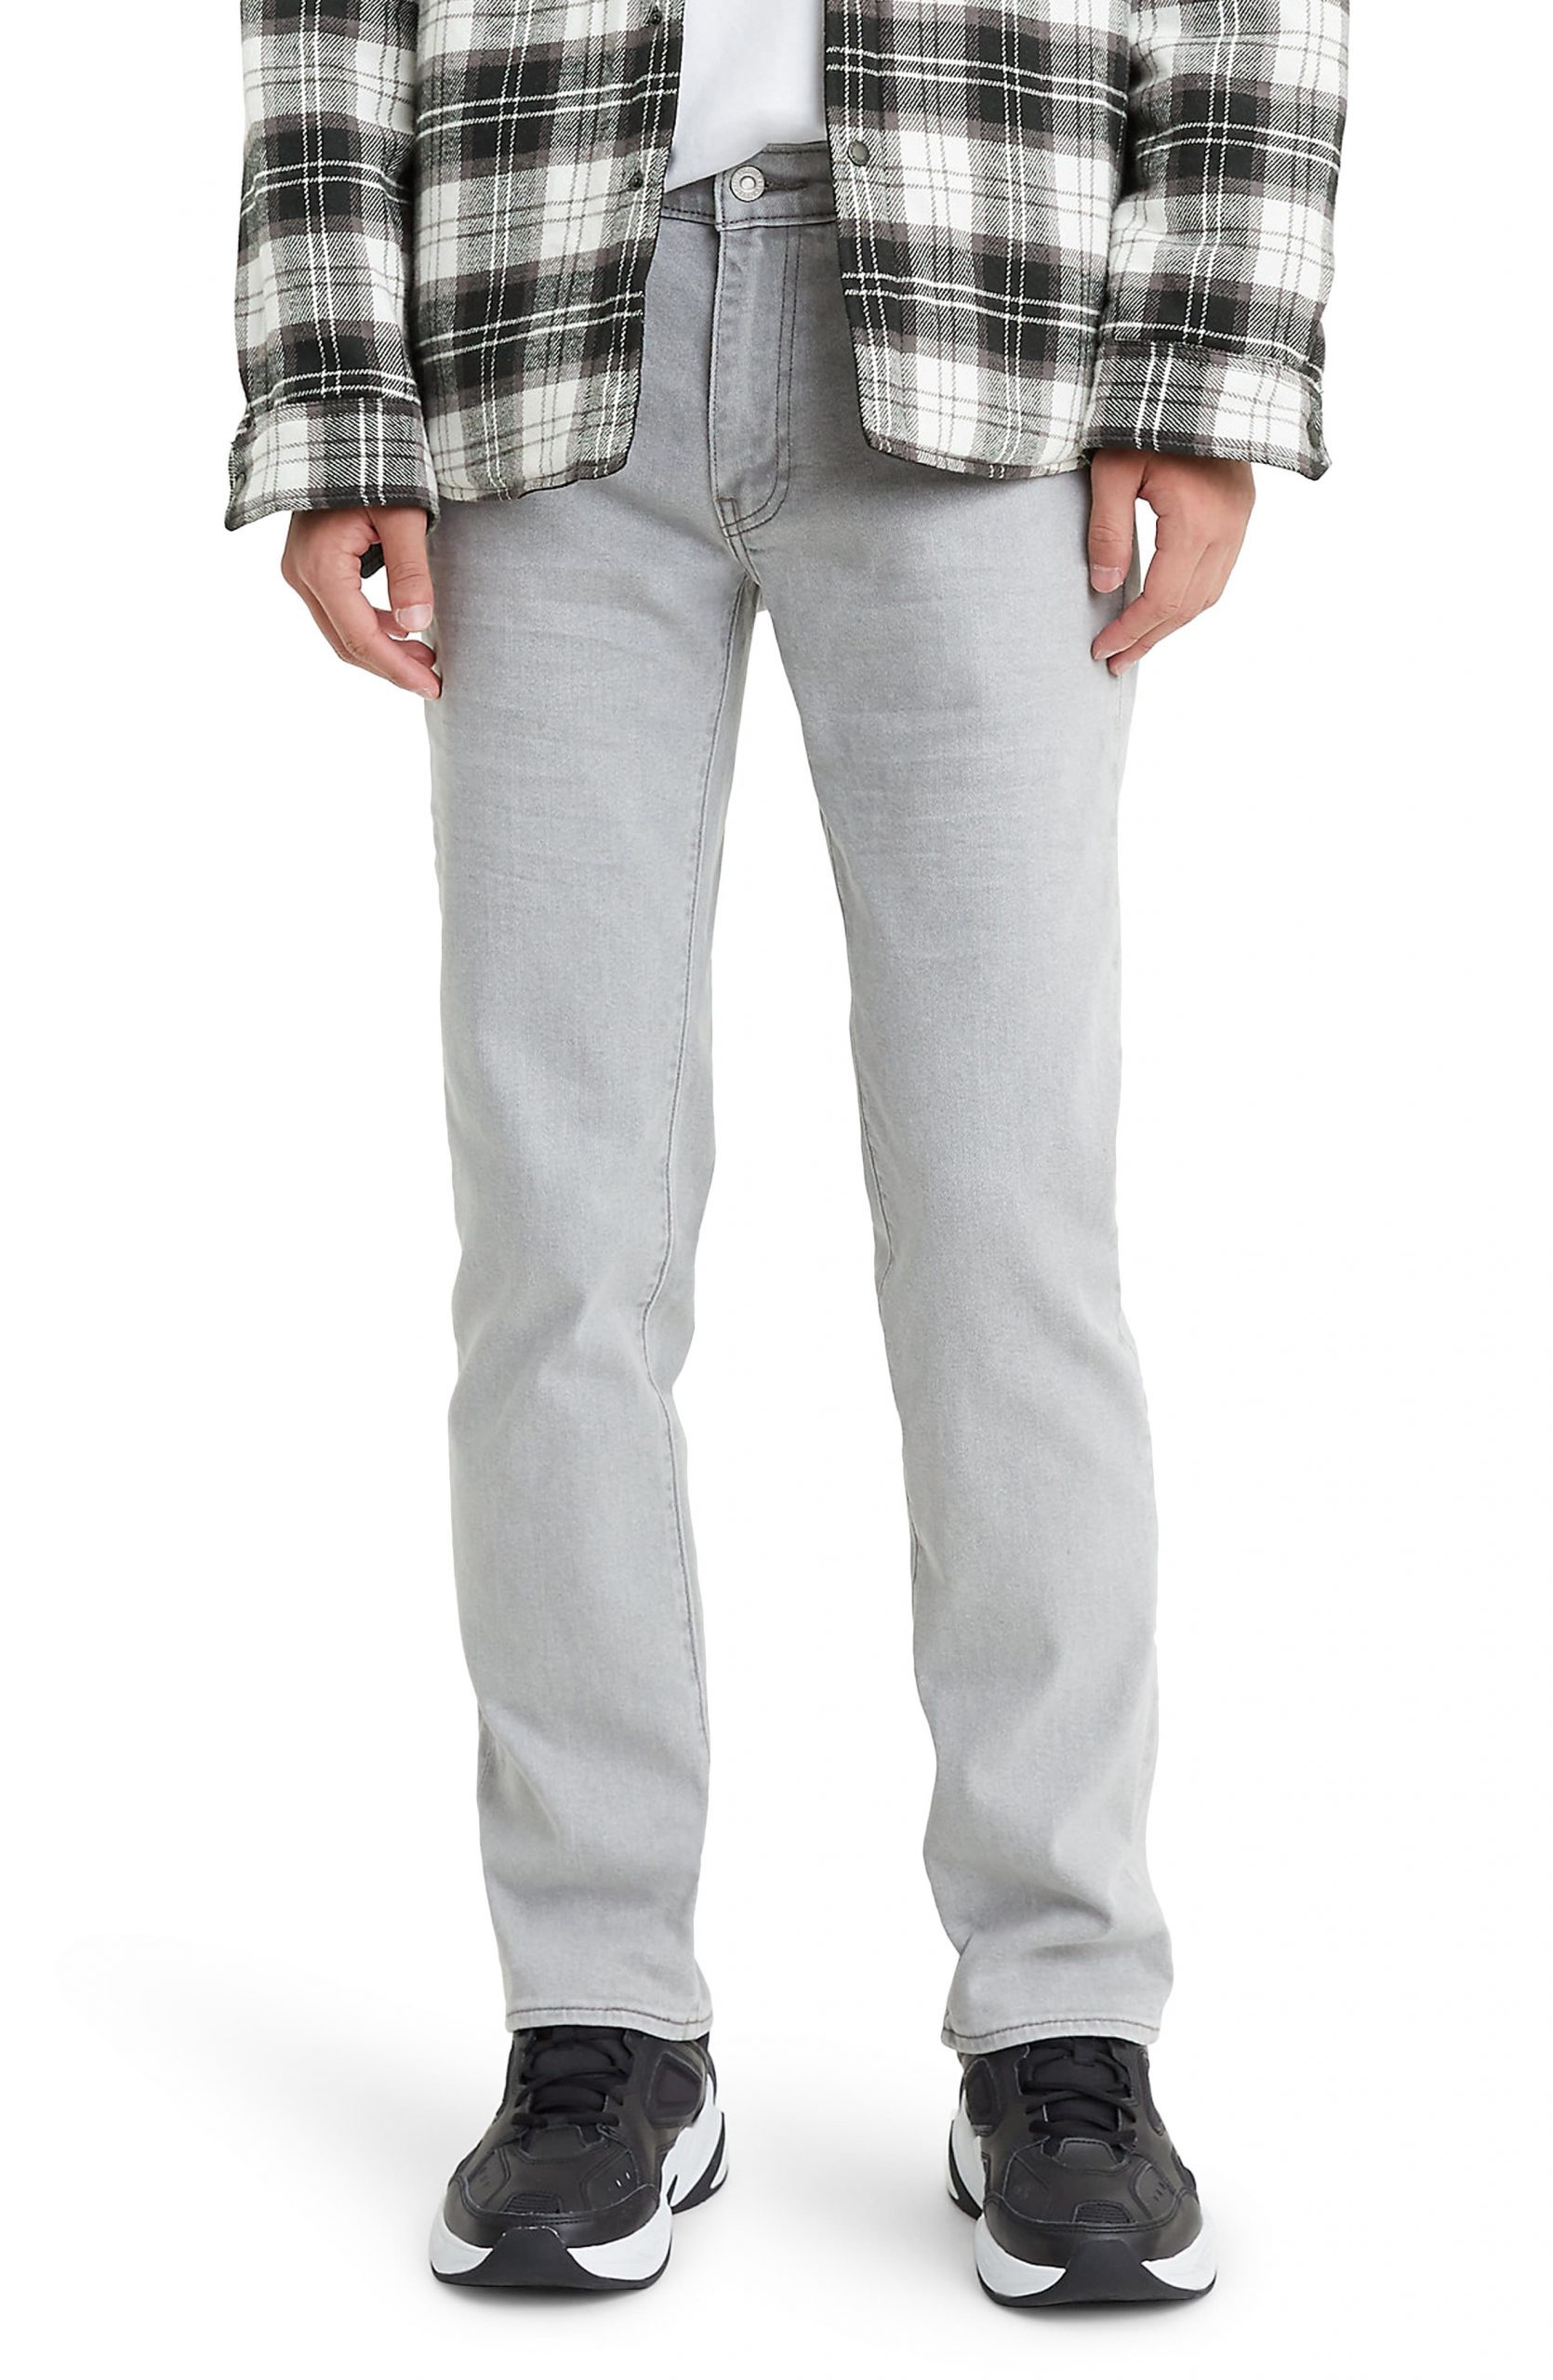 levis jeans size 28